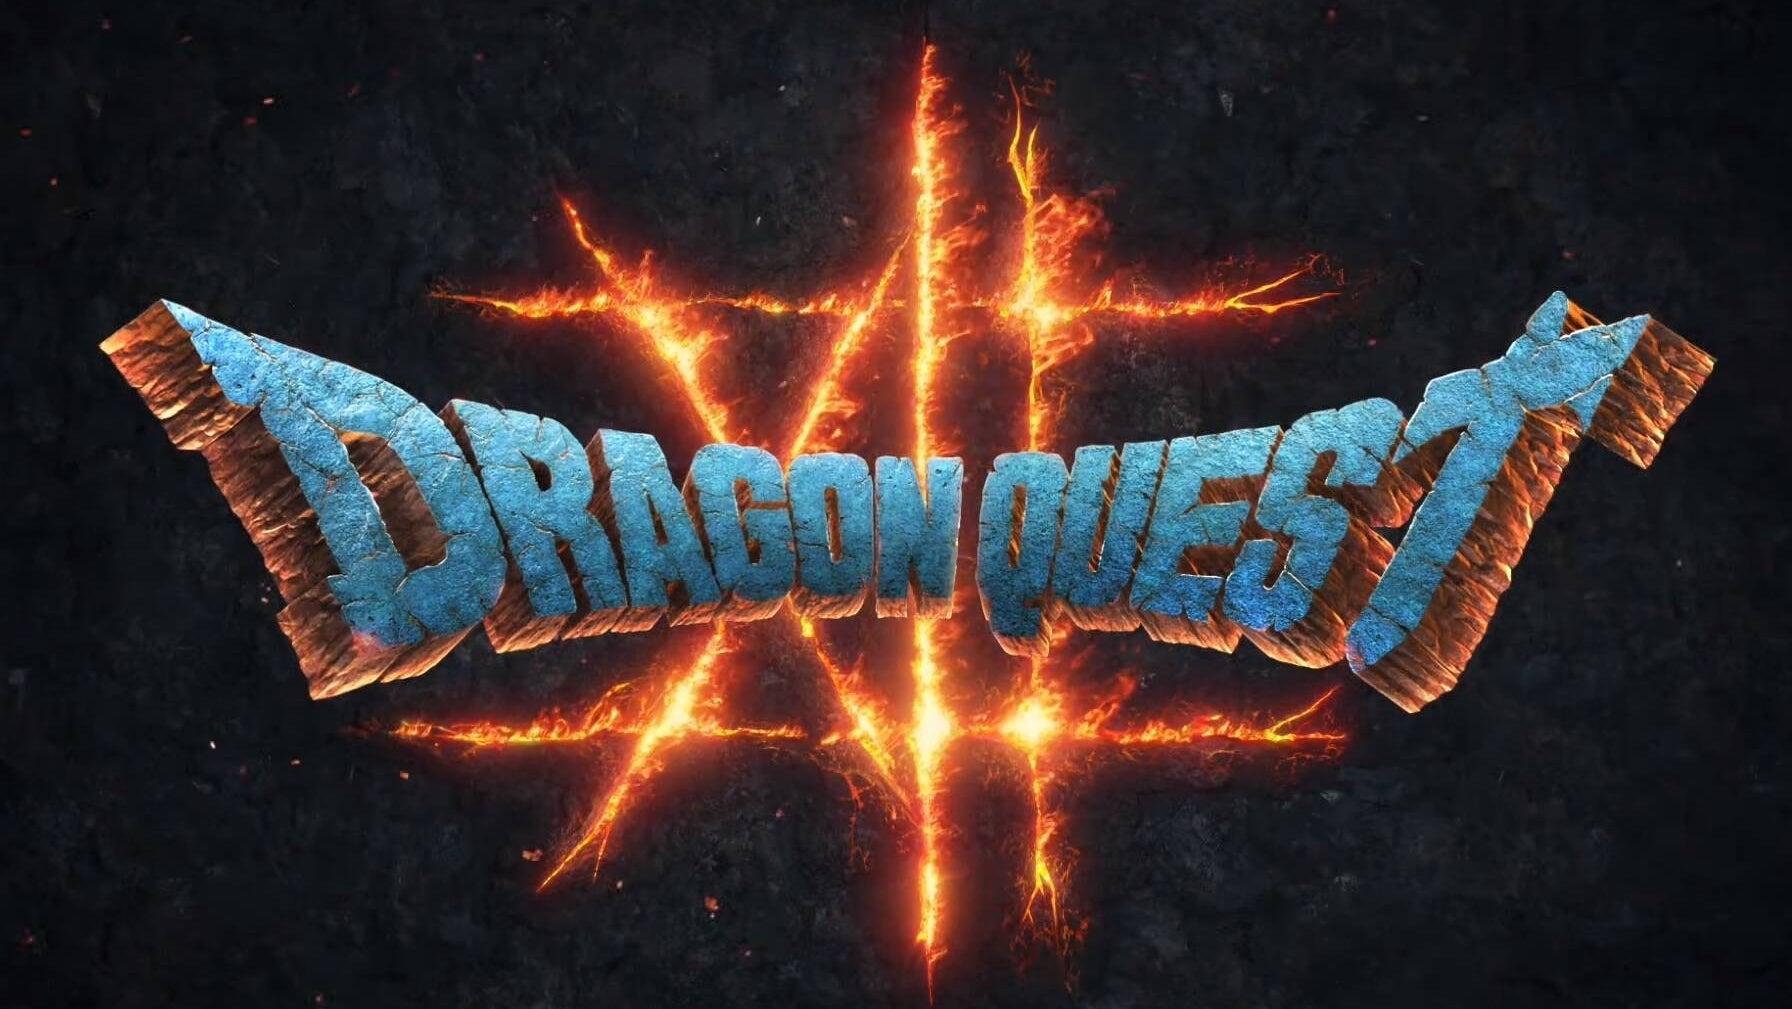 Immagine di Dragon Quest XII sarà un autentico action RPG? Nuovi dettagli dagli annunci di lavoro